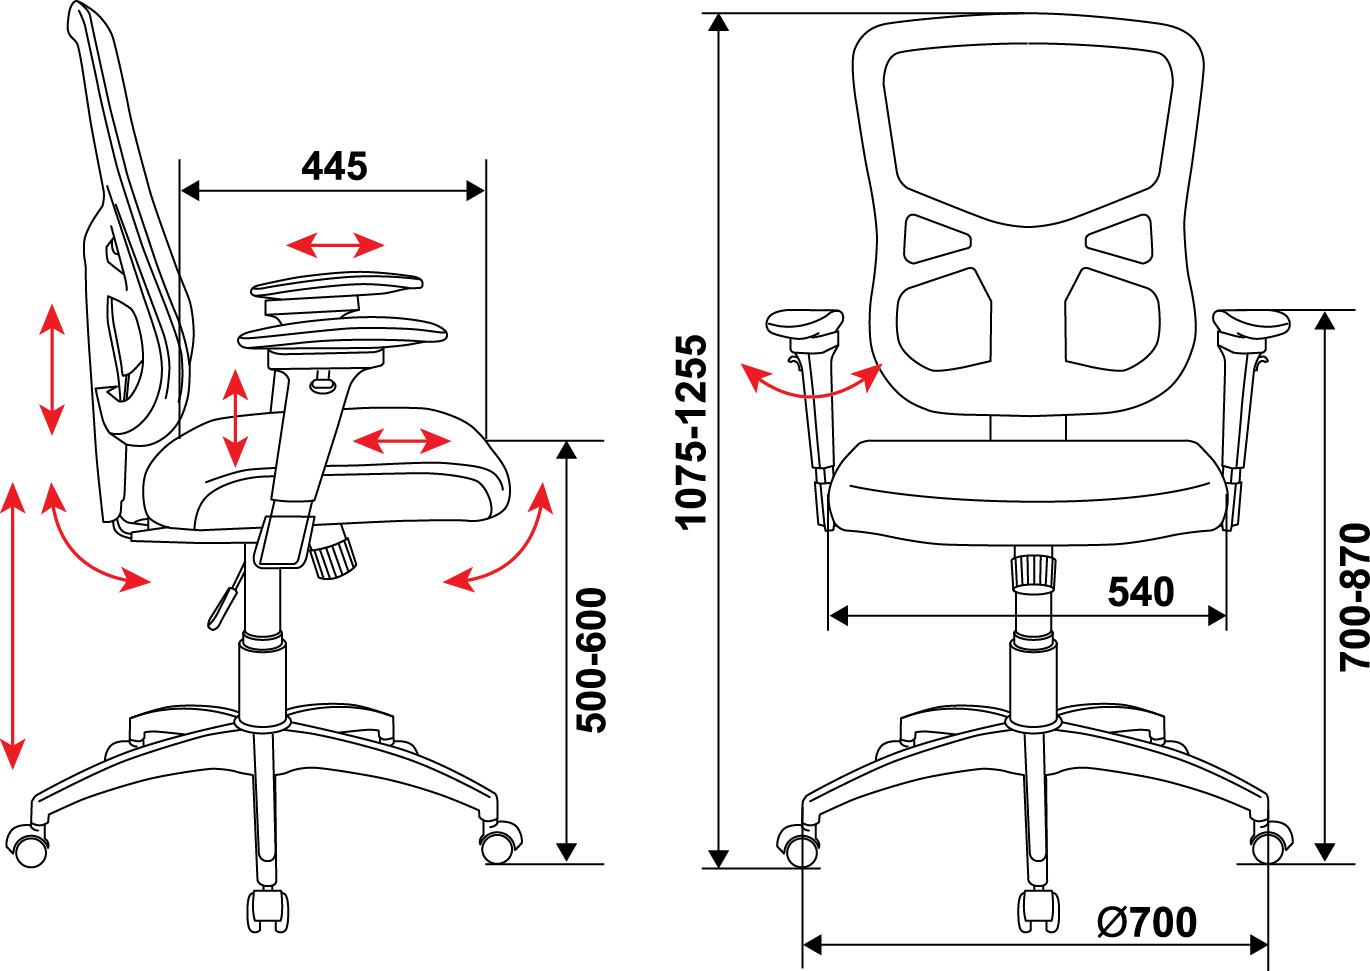 компьютерный стул высота сиденья 65 см